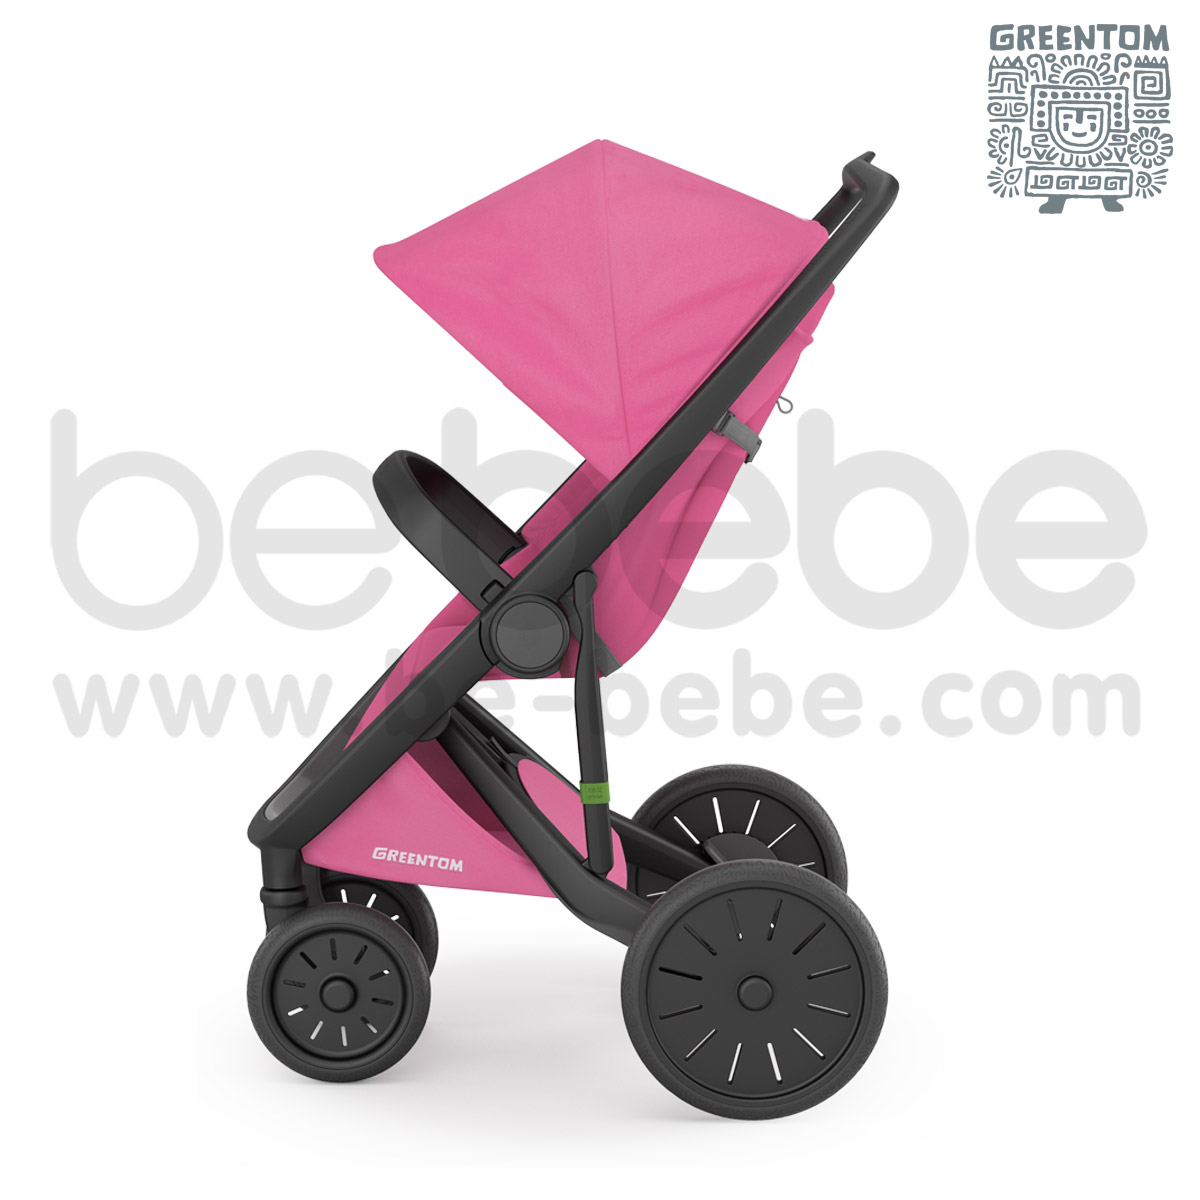 Greentom : Classic Black Frame Stroller - Pink